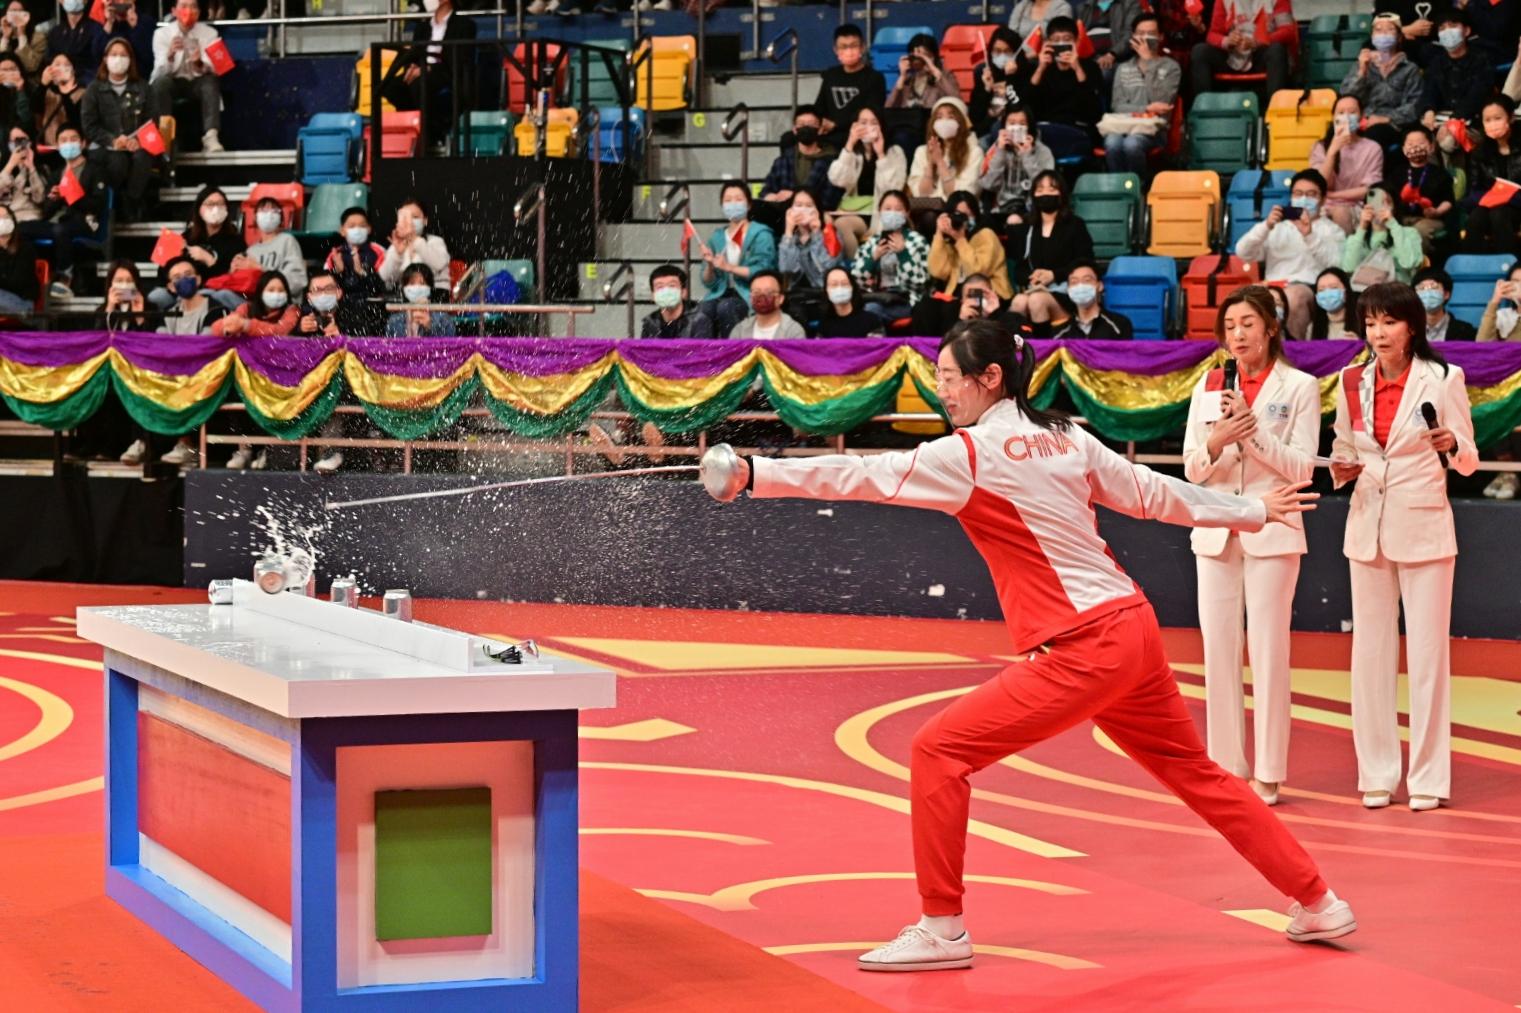 東京2020奧運會內地奧運健兒代表團今日（十二月四日）下午出席在灣仔伊利沙伯體育館舉行的「奧運健兒大匯演」。圖示內地劍擊運動員孫一文（左）參與競技比試。

